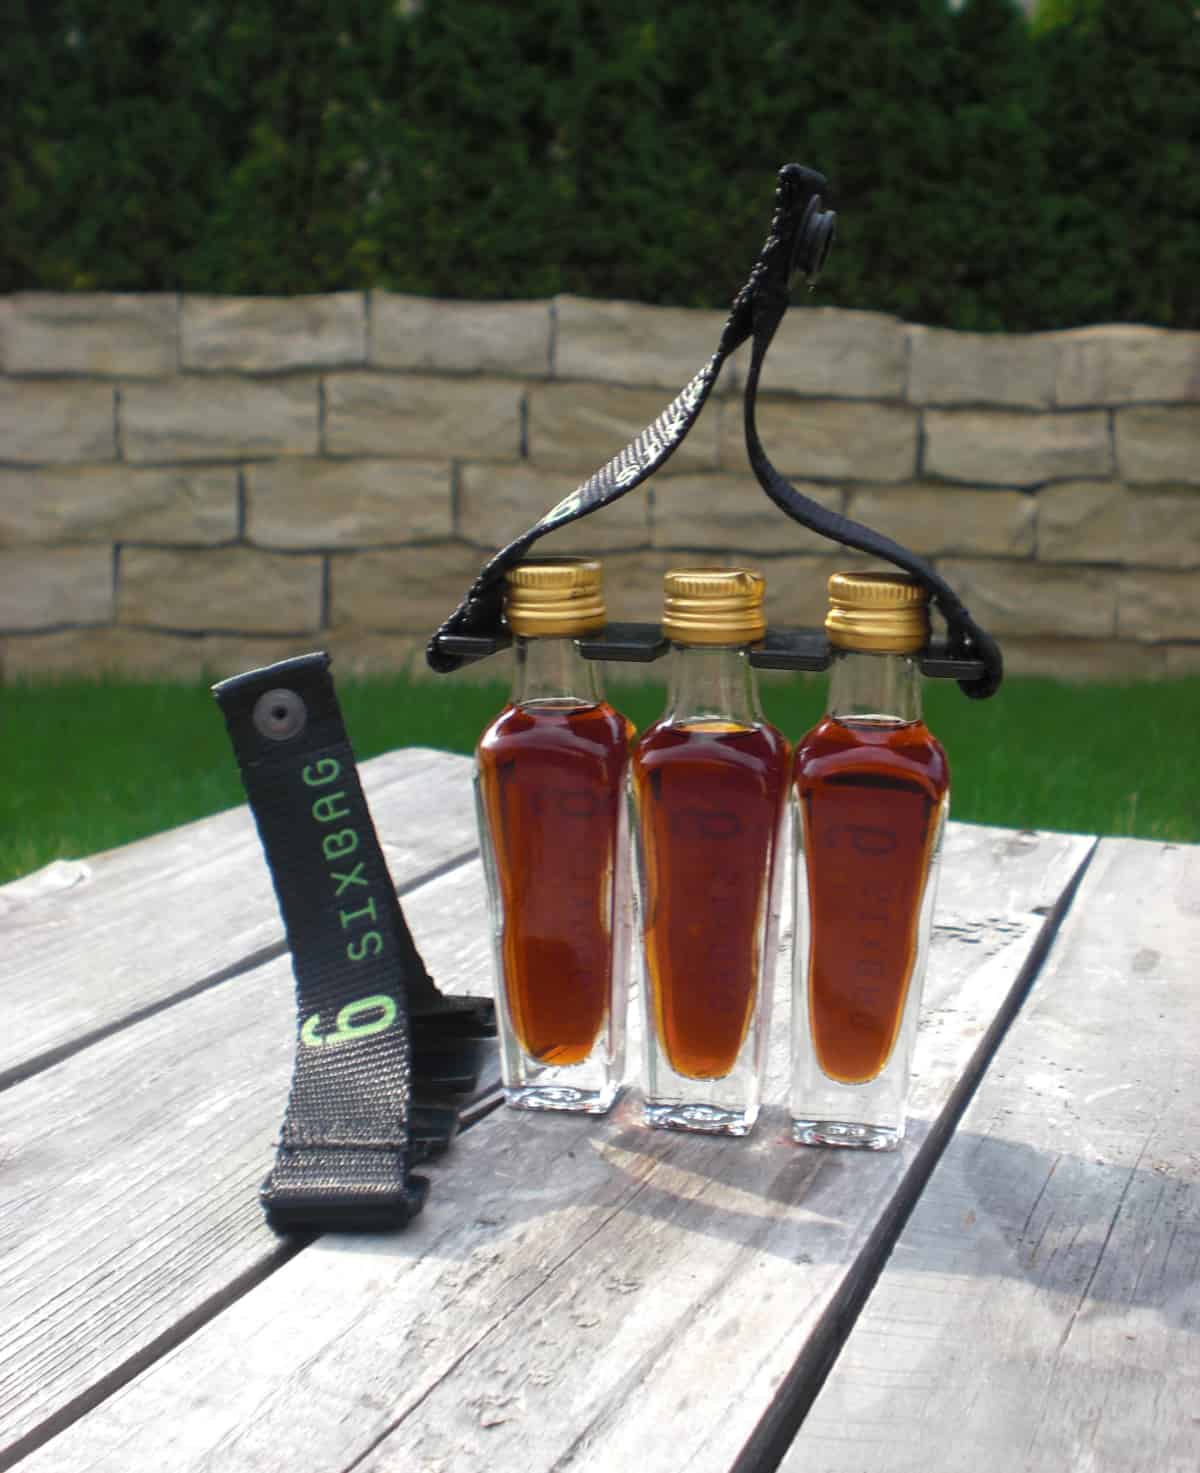 Getränkehalter für Schnapsflaschen (Schnapsgürtel)  SIXBAG - der mobile  Getränkehalter mit Klickadapter